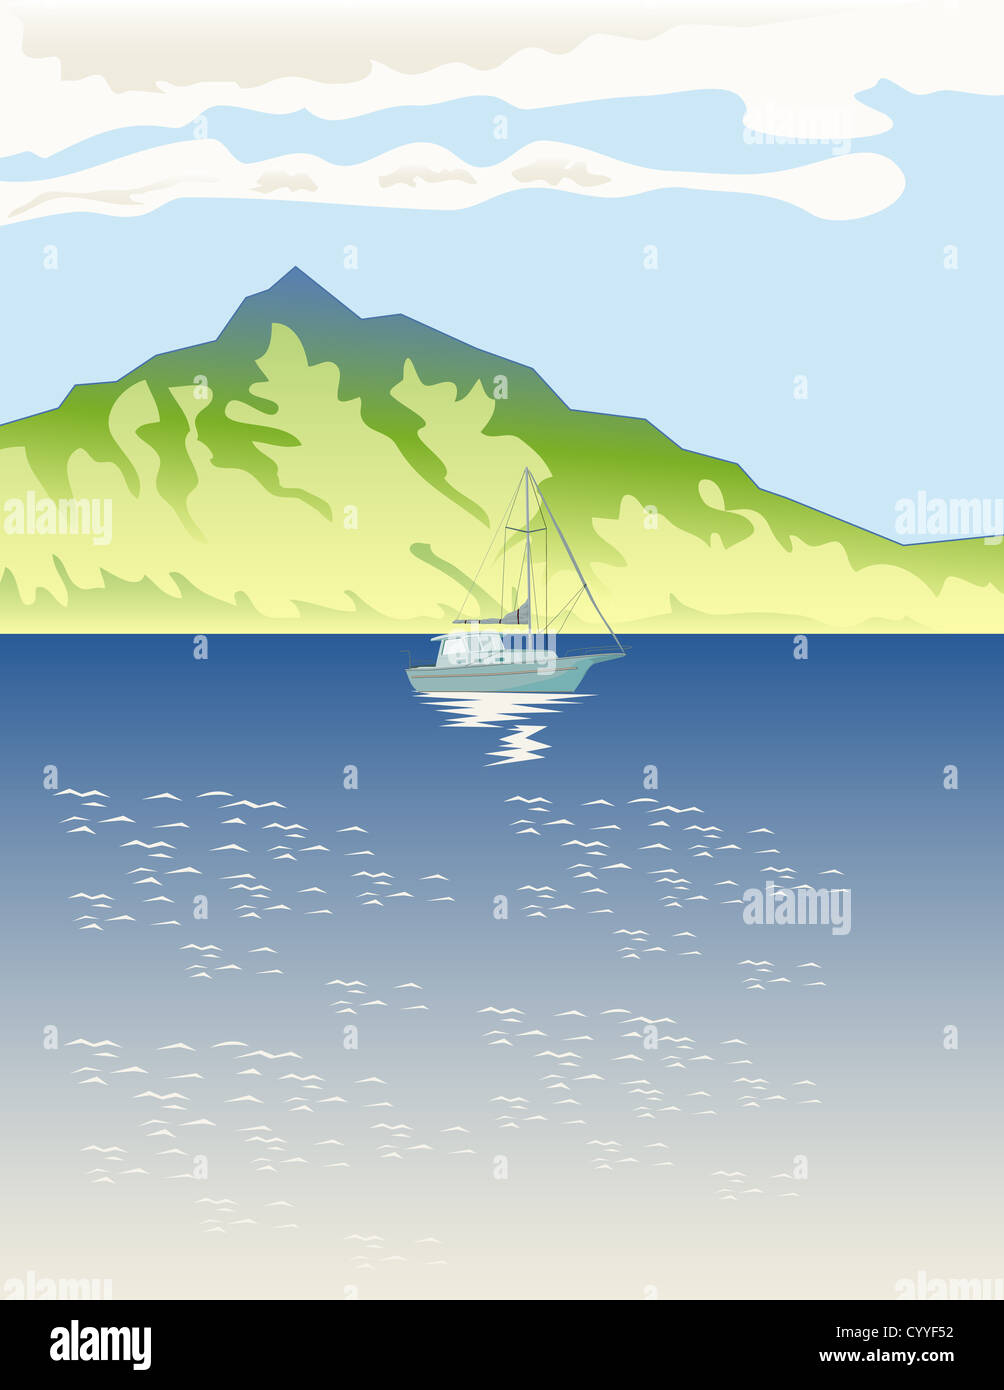 Ilustración de un velero navegar por el lago de montaña en estilo retro de fondo. Foto de stock